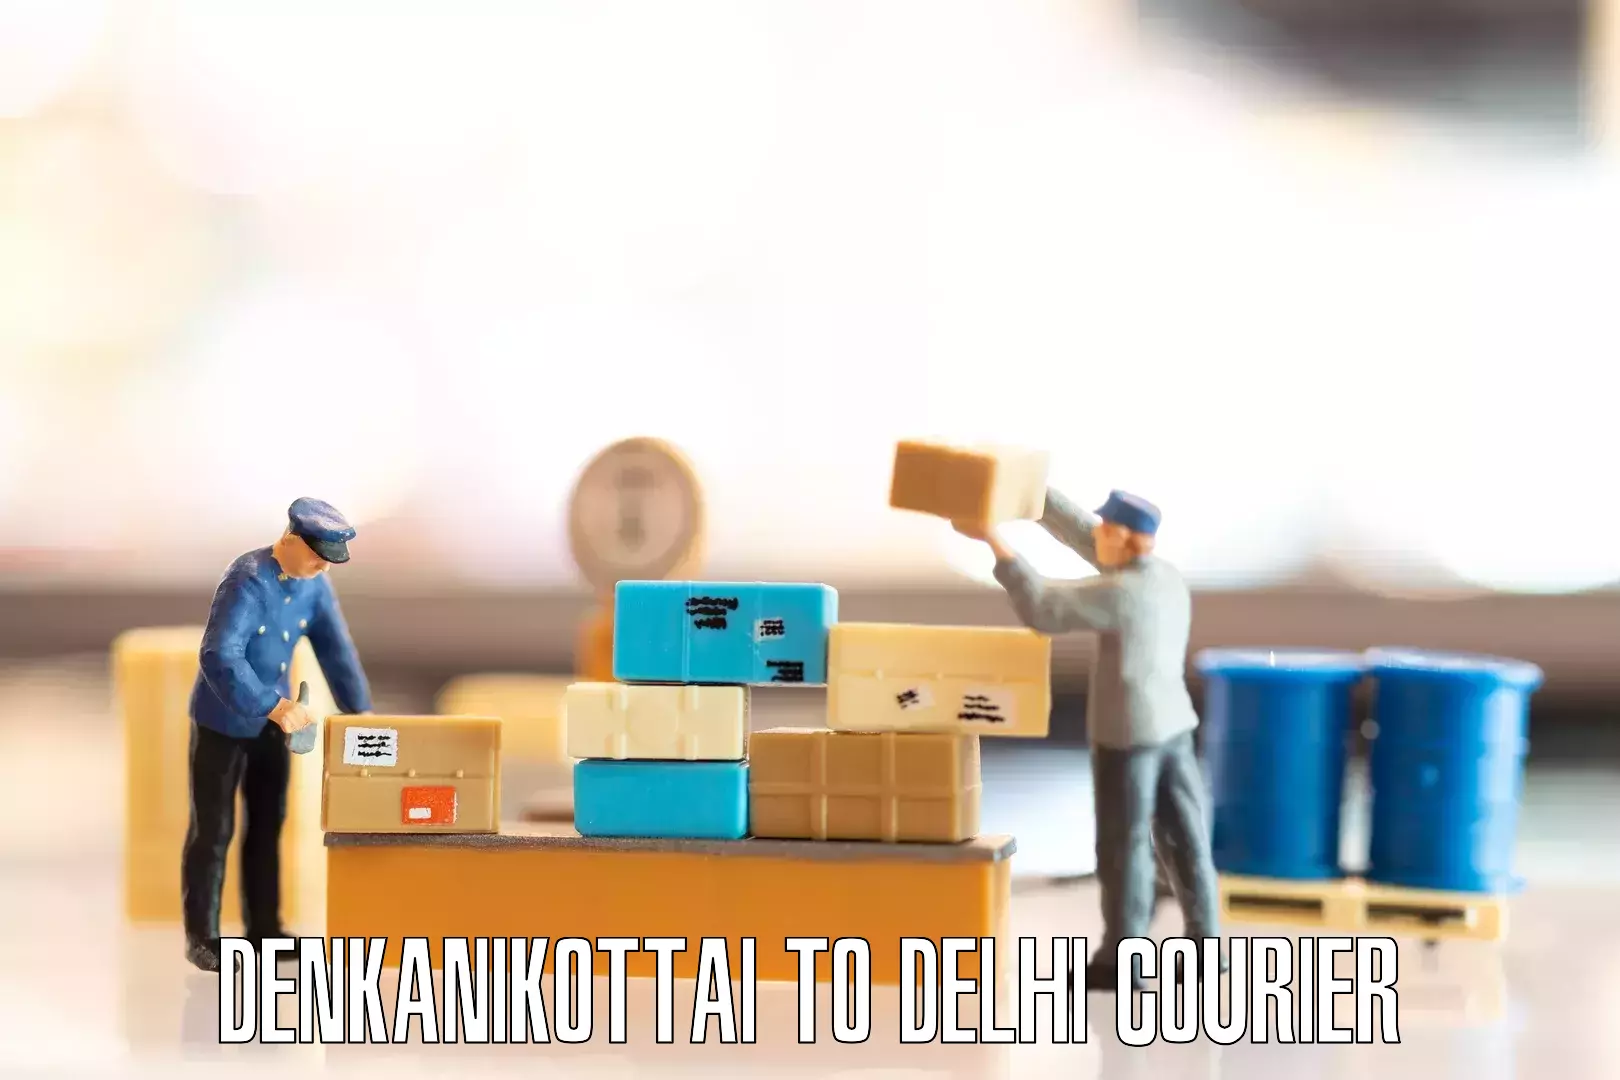 Seamless moving process Denkanikottai to Delhi